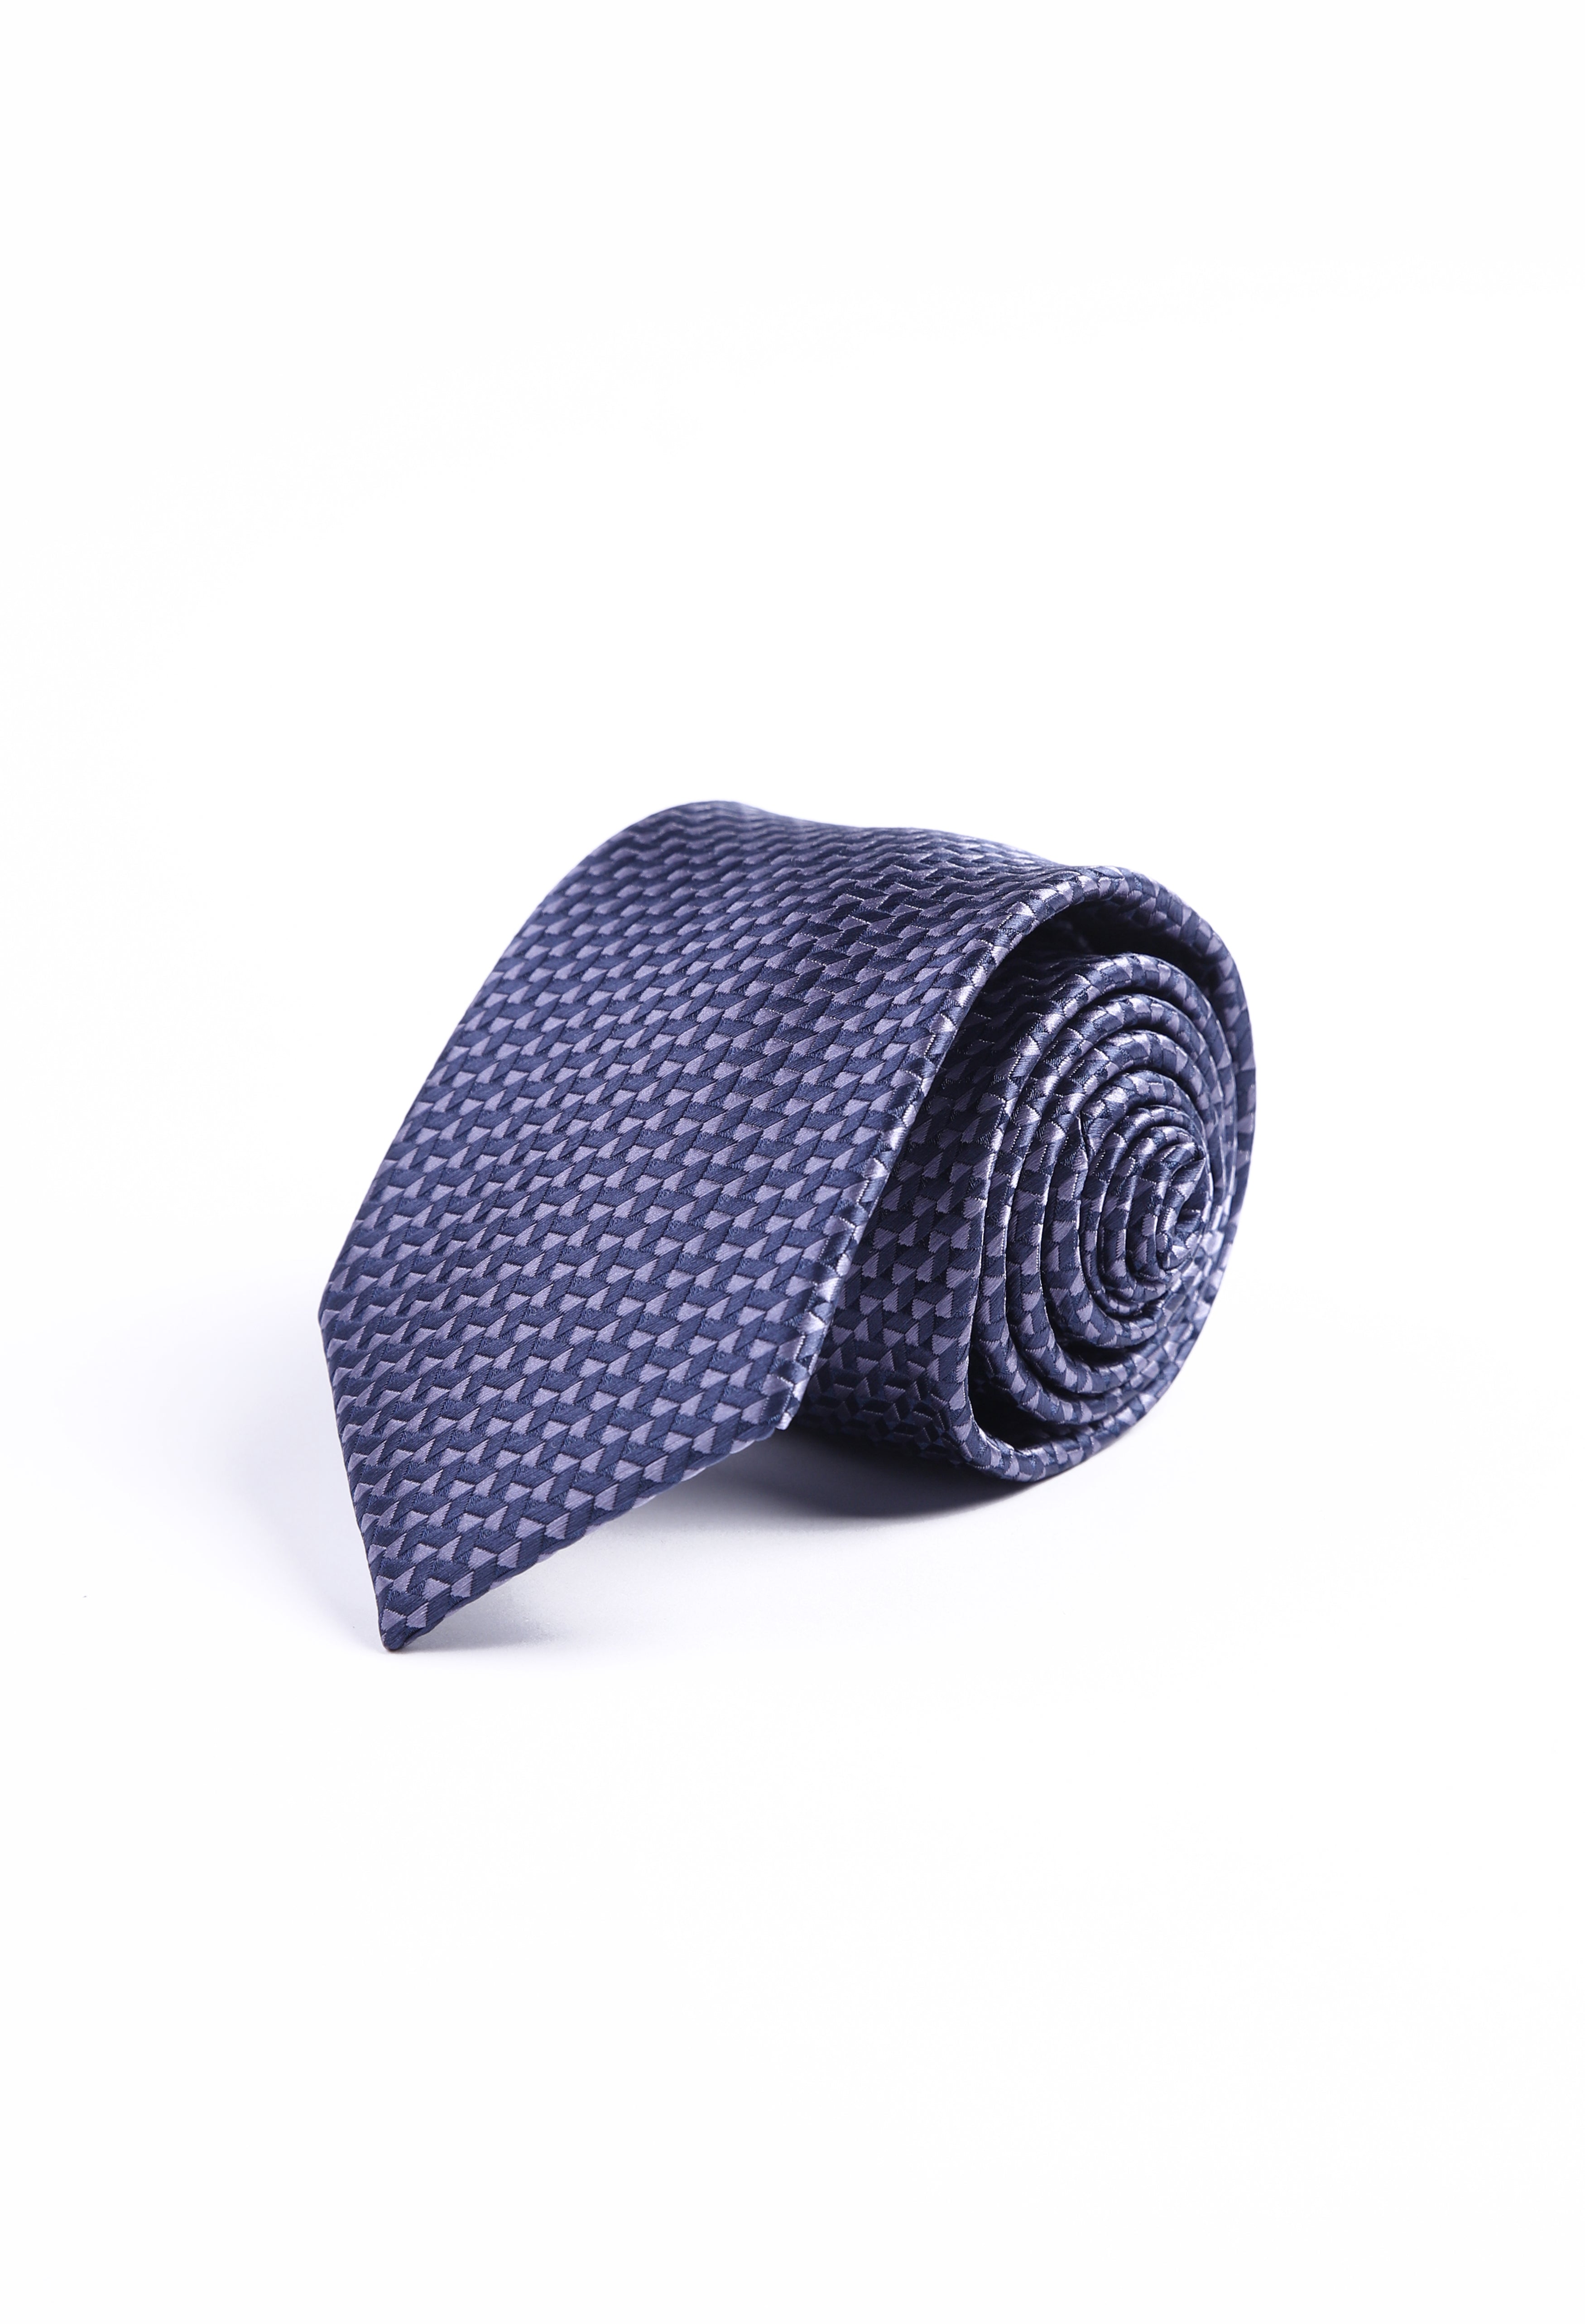 Nashville Blue Zigzag Tie (TIE-000035)